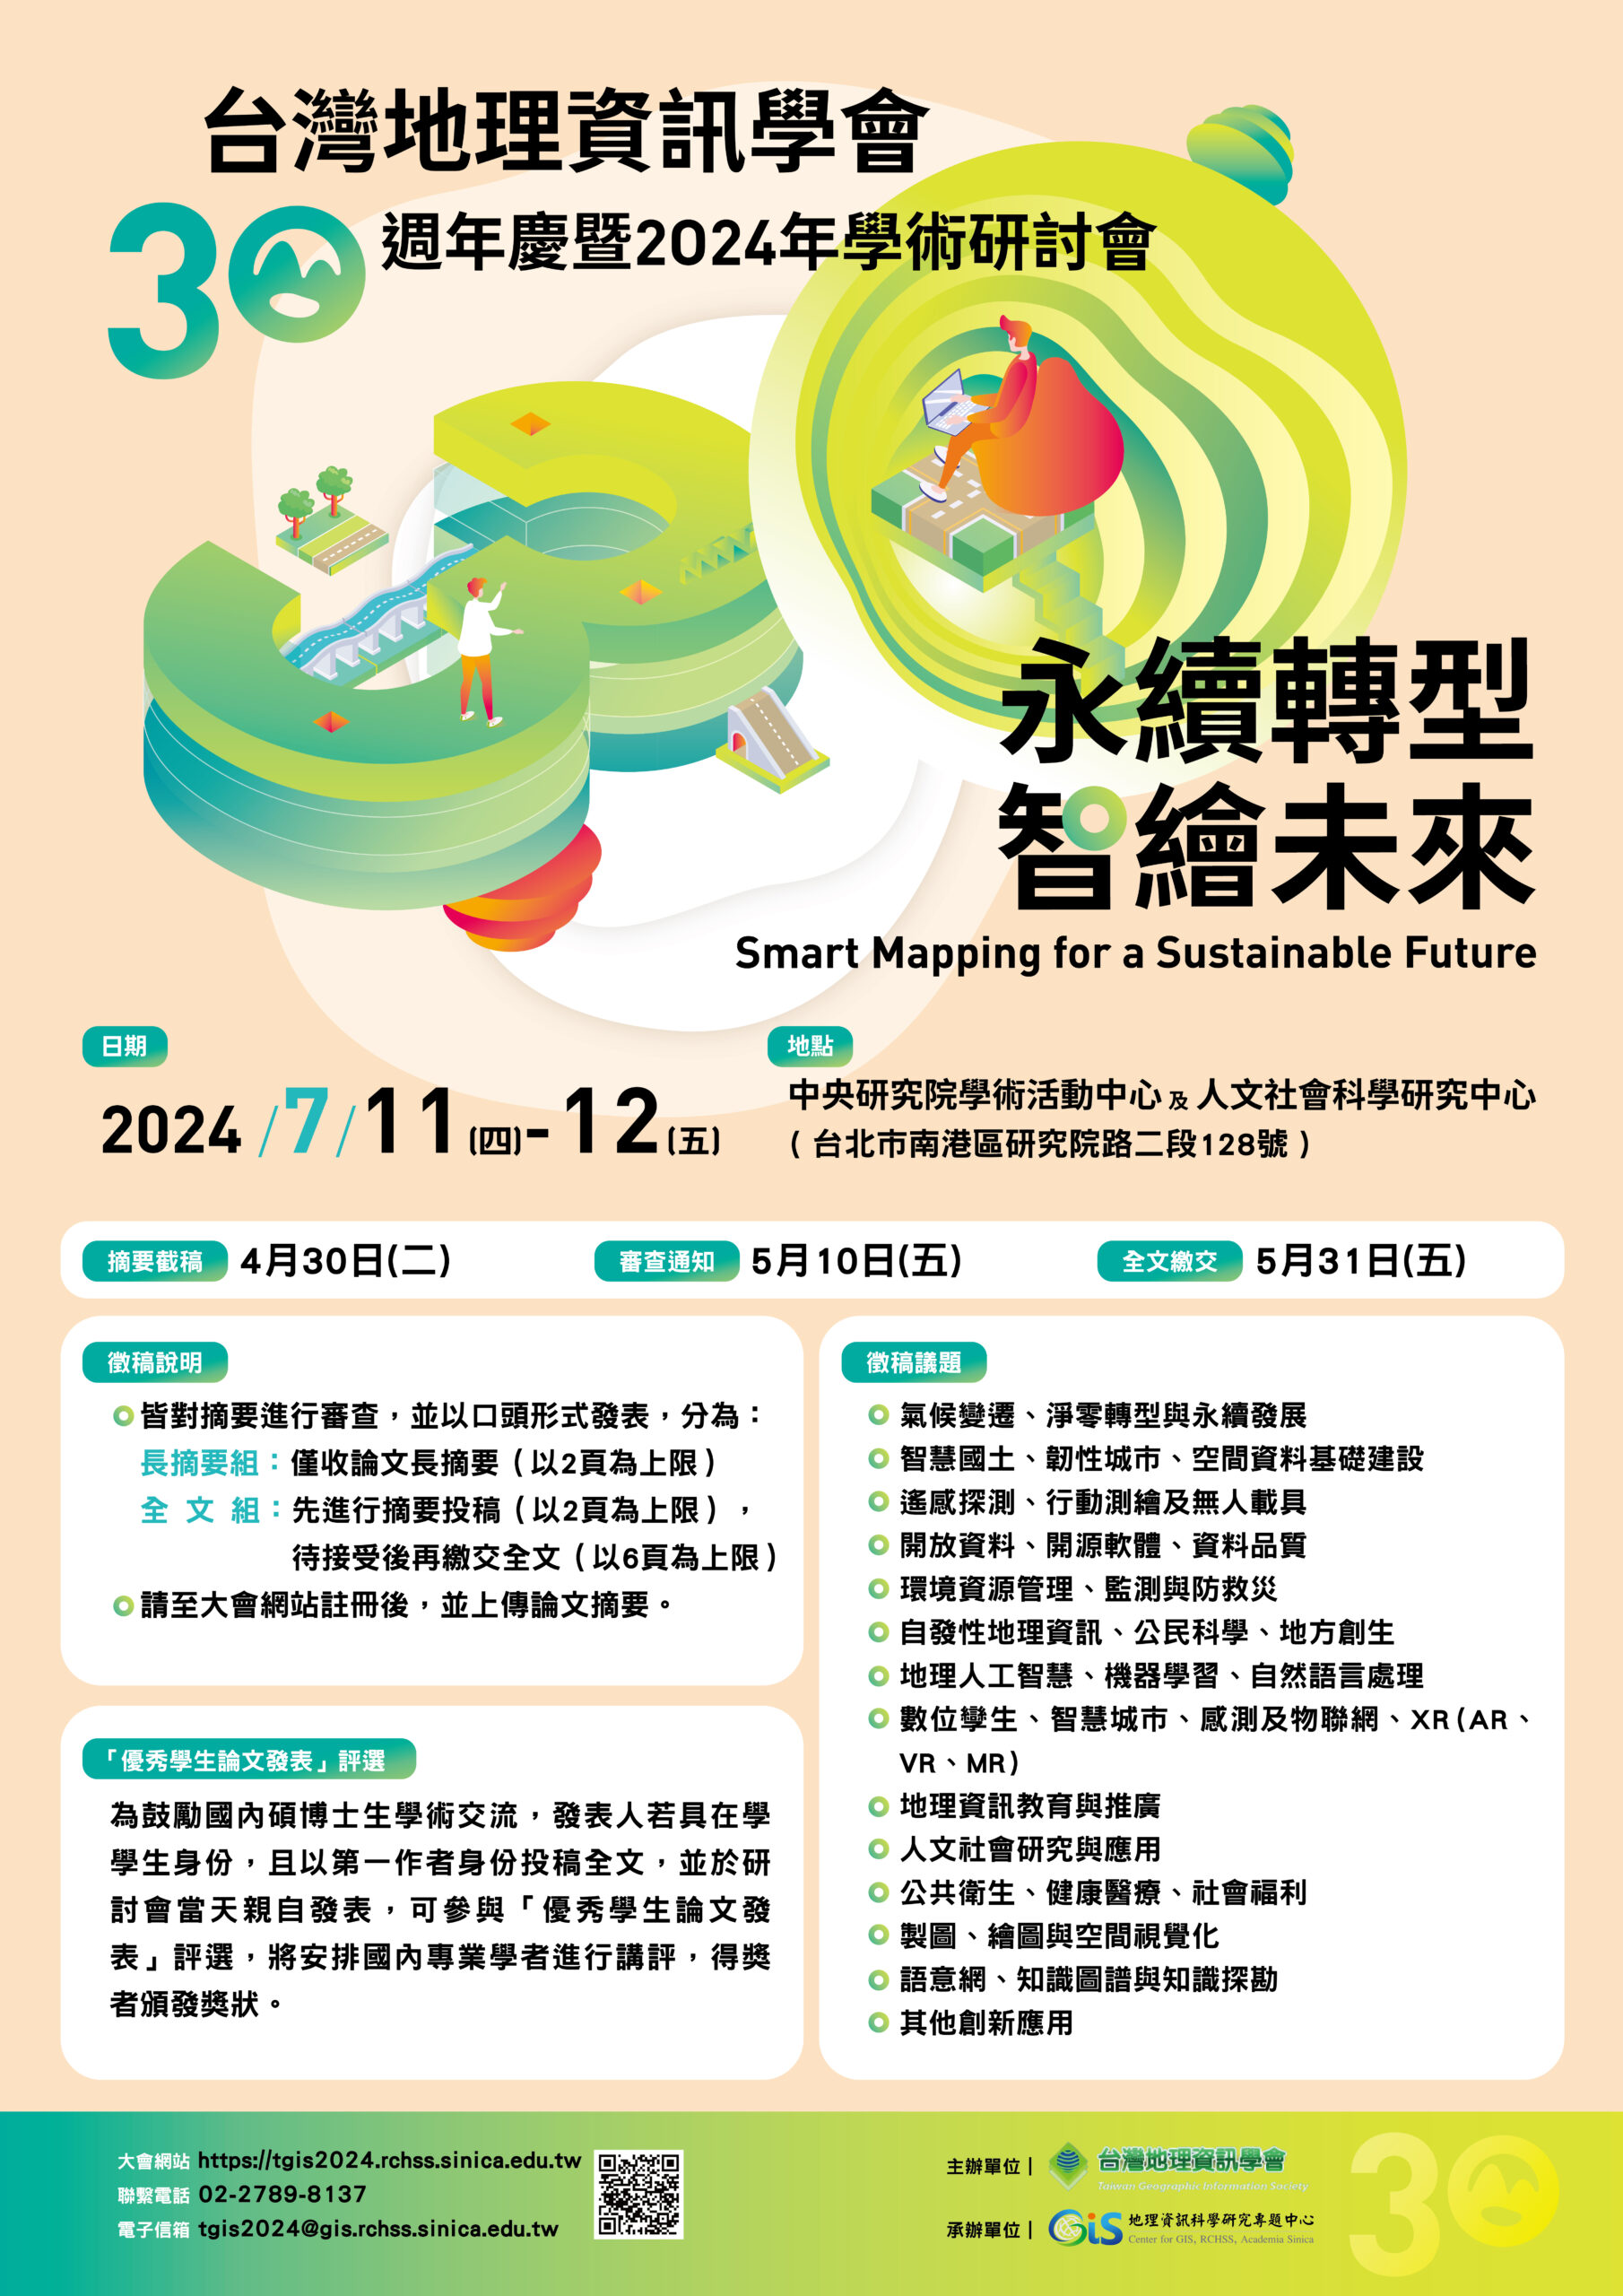 「2024年台灣地理資訊學會學術研討會」徵稿啟事